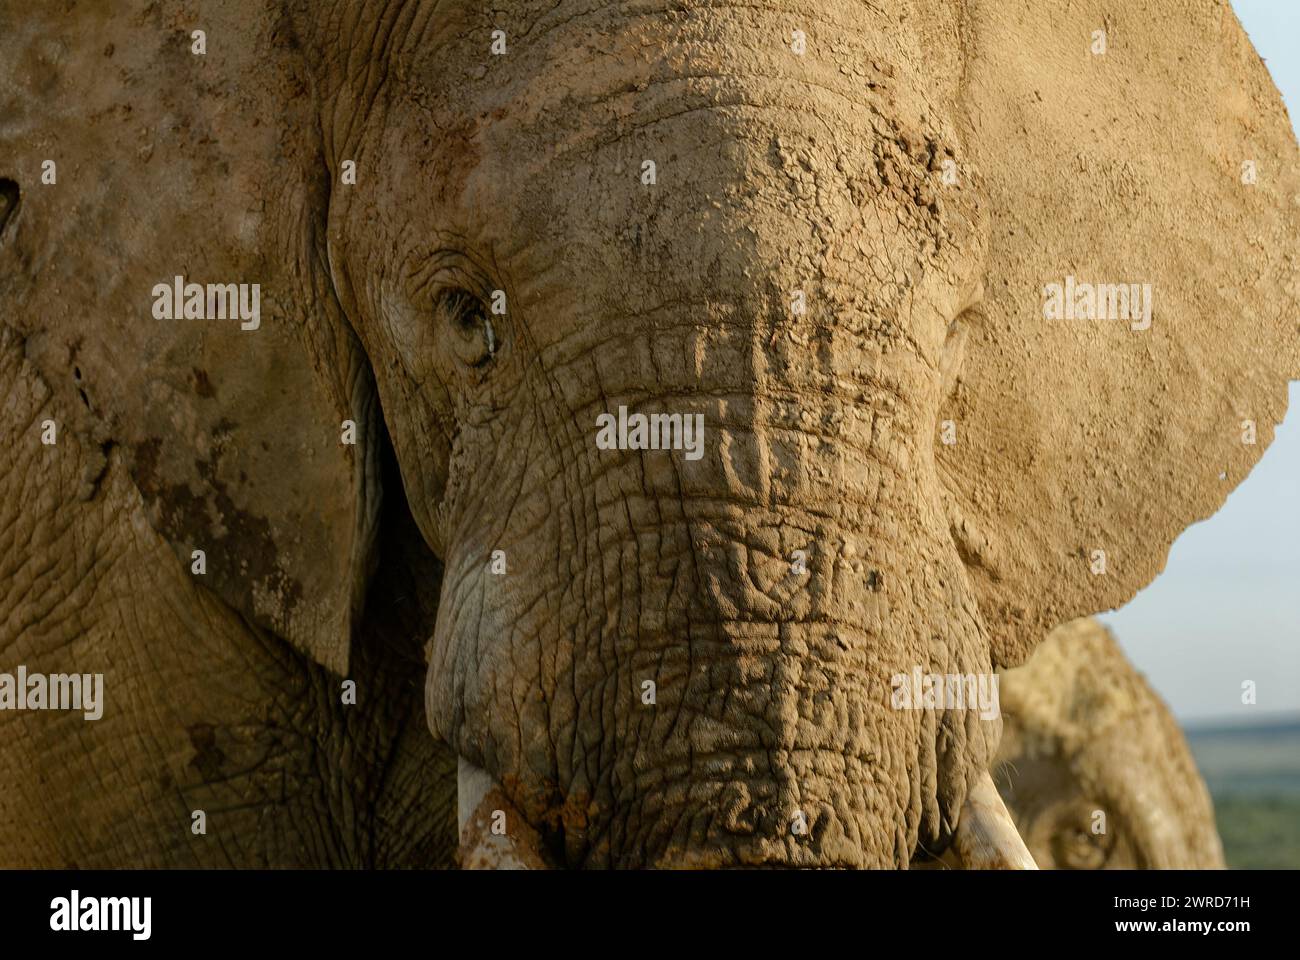 Gros plan portrait d'un visage d'éléphant boueux. Beaucoup de détails. Banque D'Images